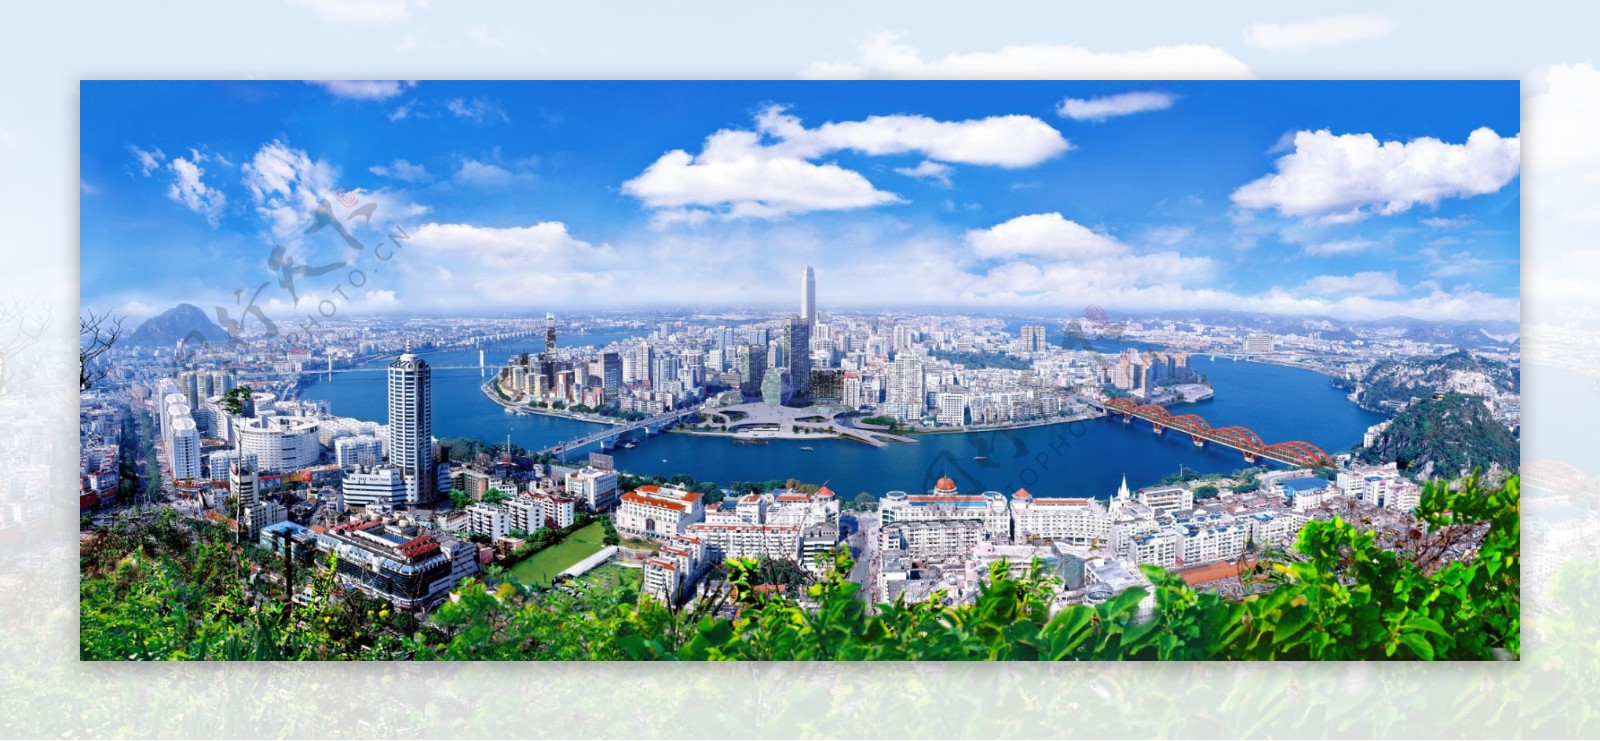 柳州市全景图图片